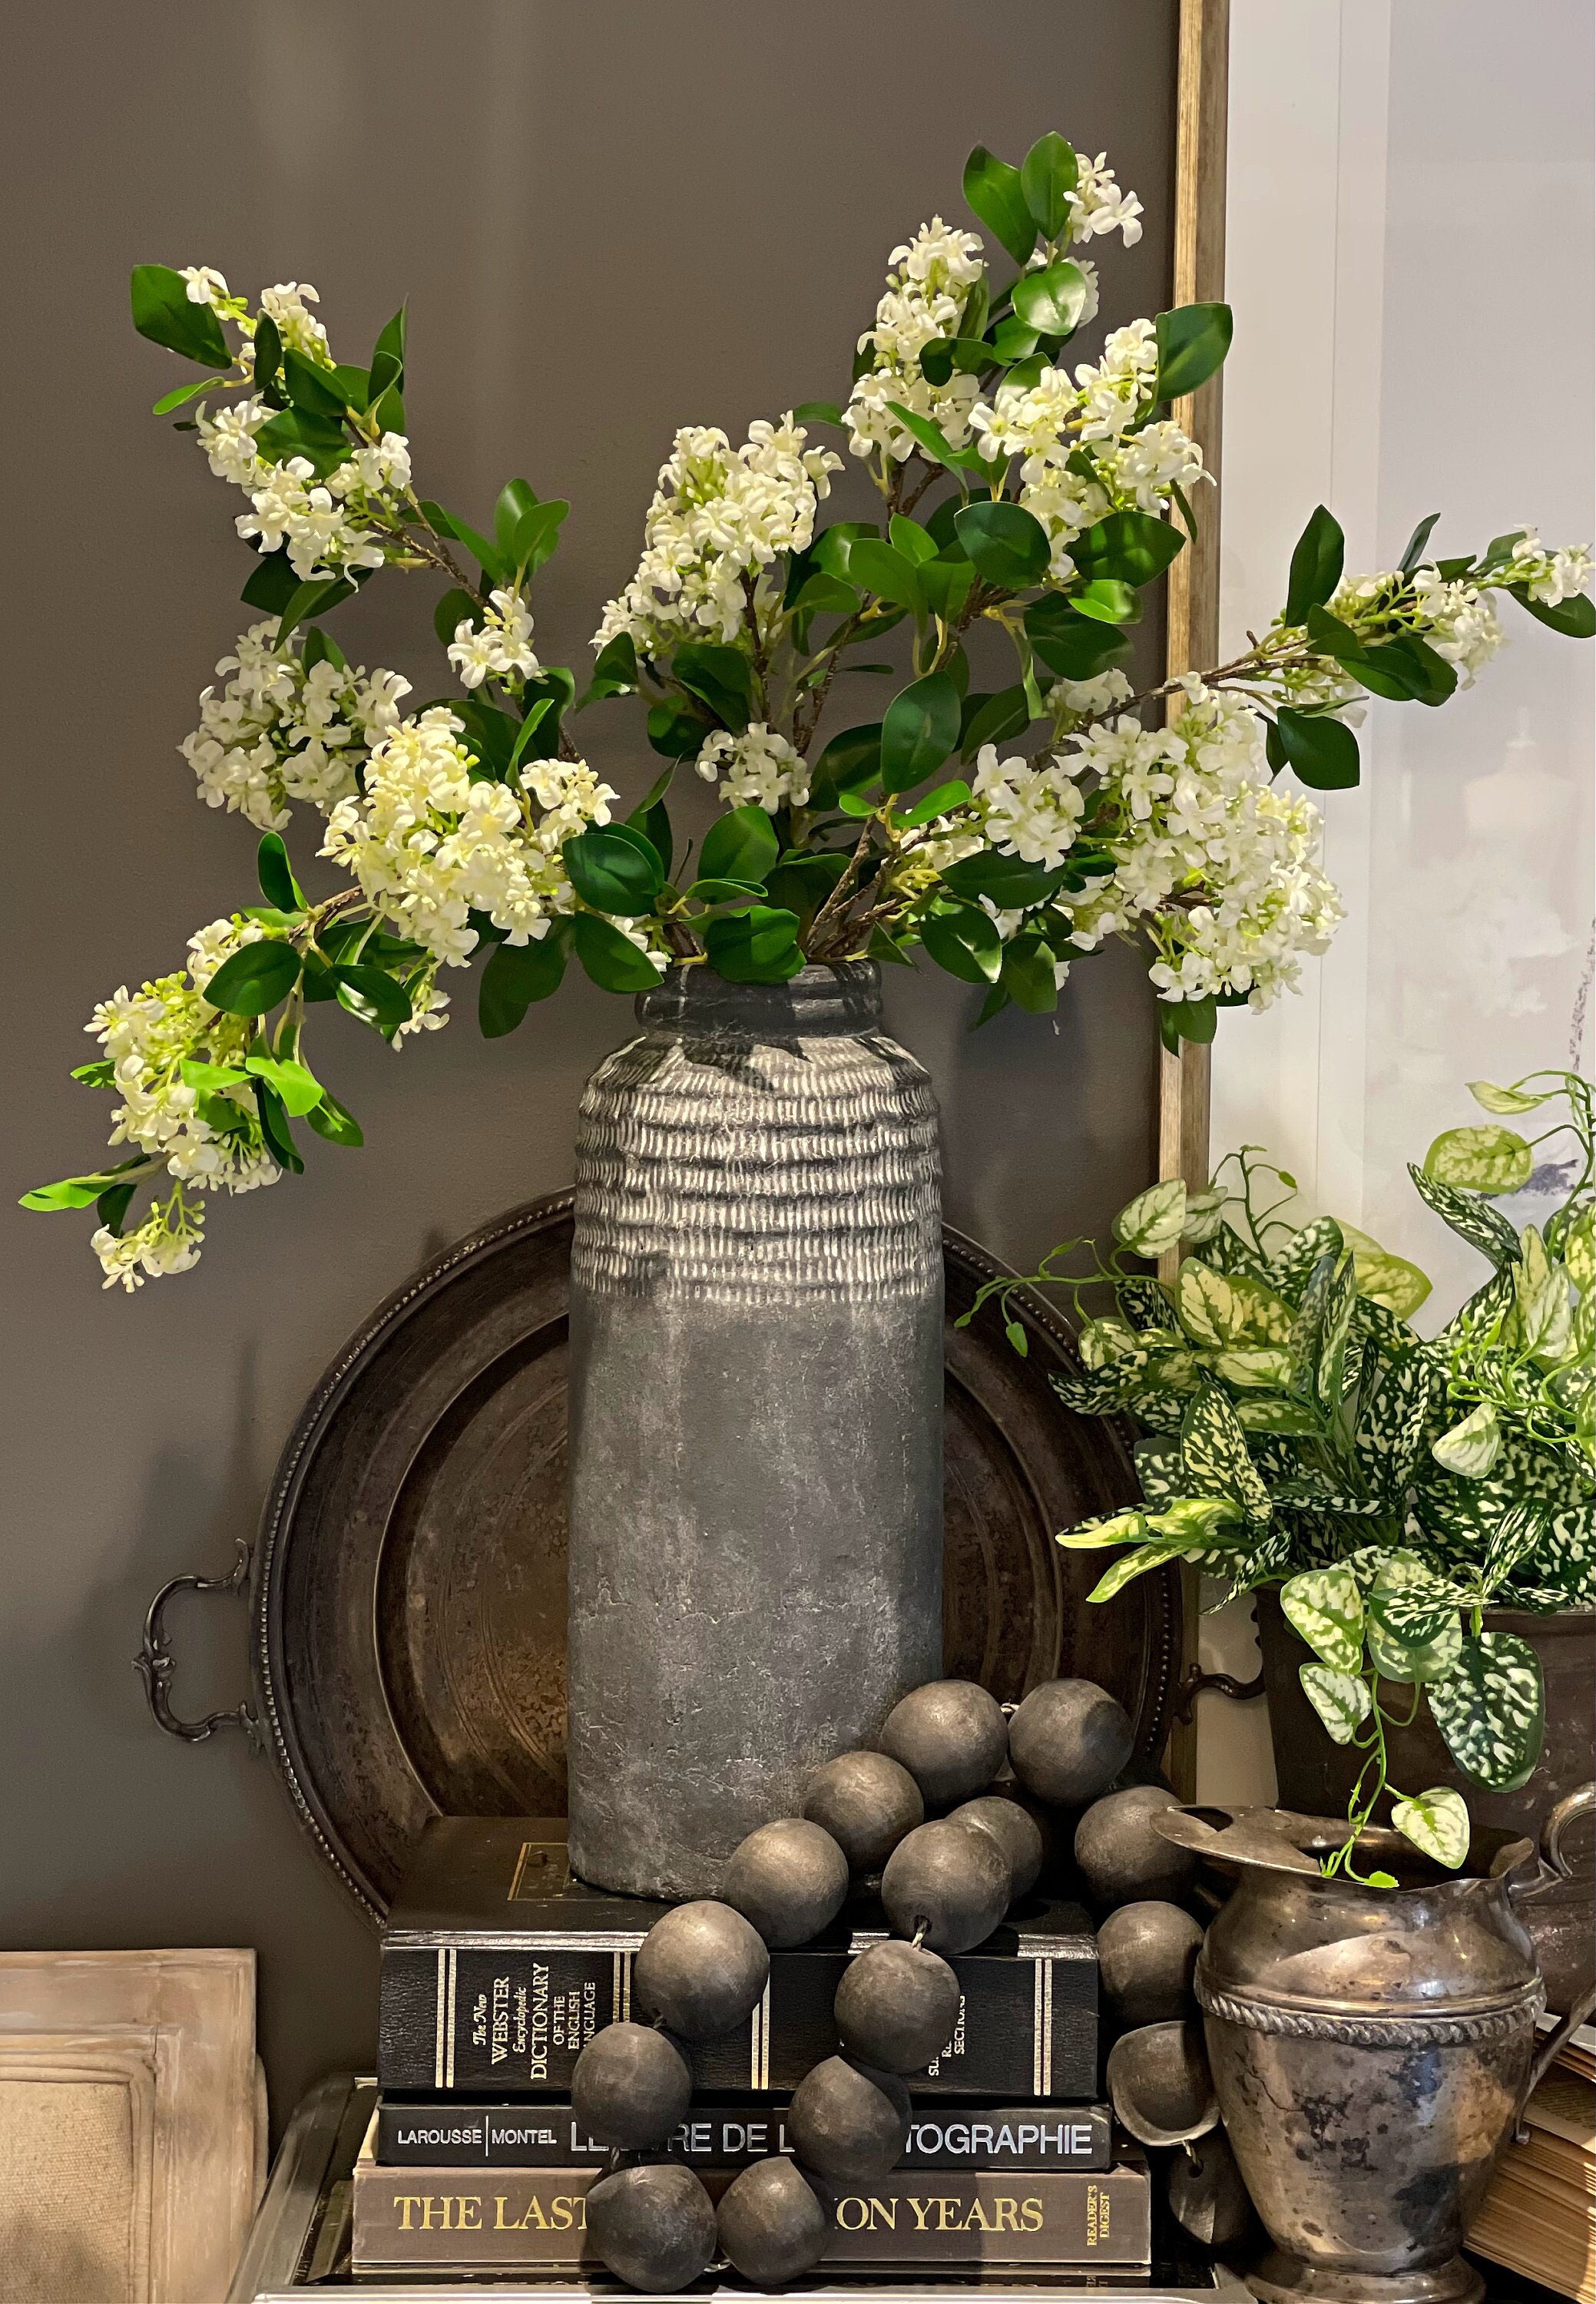 Jasmine flowers - Long stem vase flowers - Fake flower stems